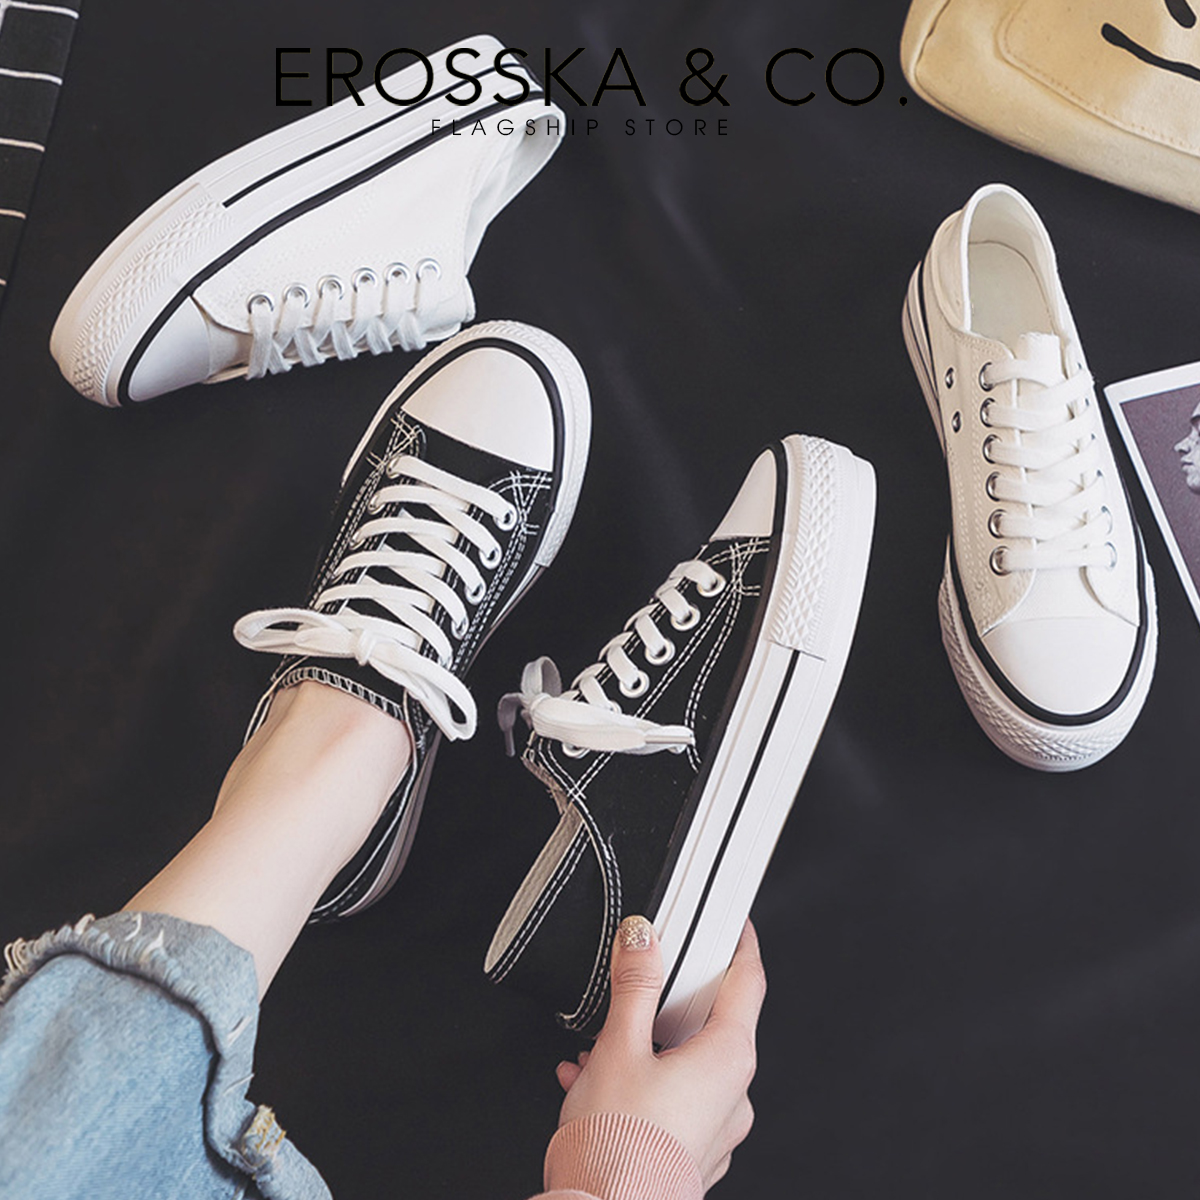 Erosska - Giày sneaker đế dày đi học phong cách basic thoải mái - GS013